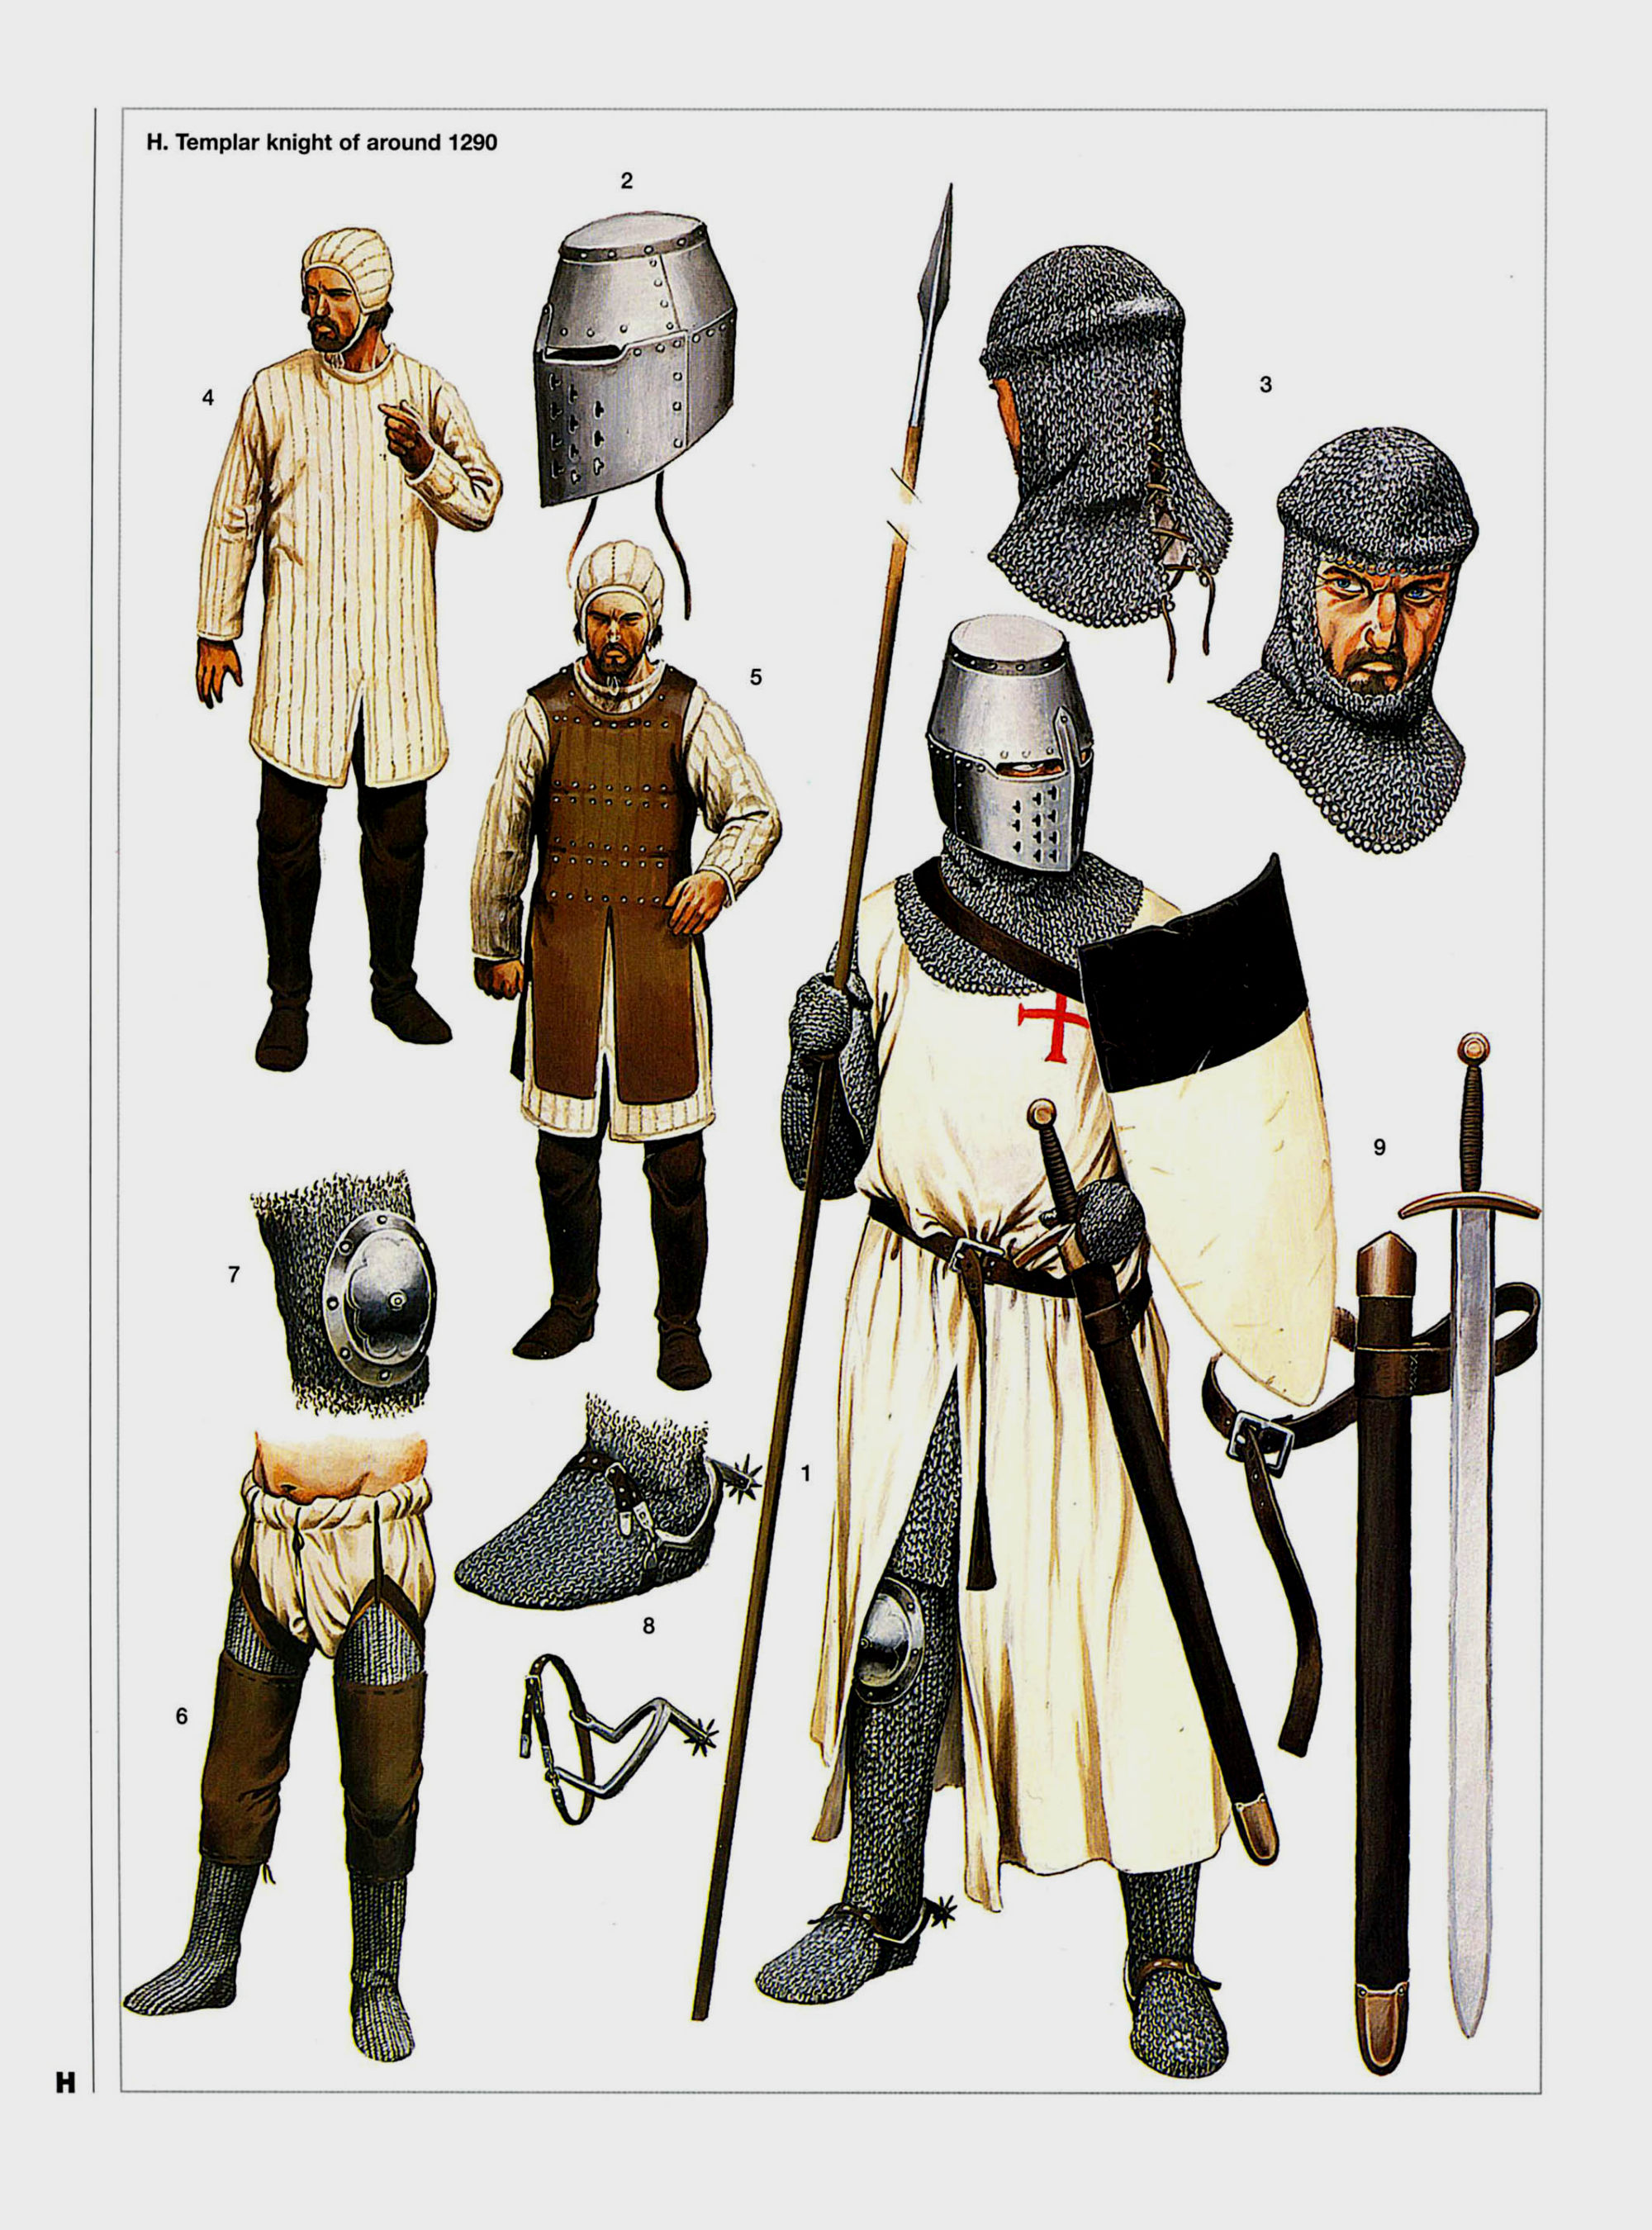 1290年的圣殿骑士，他已经采用了桶盔，这种头盔正是在海外发明的